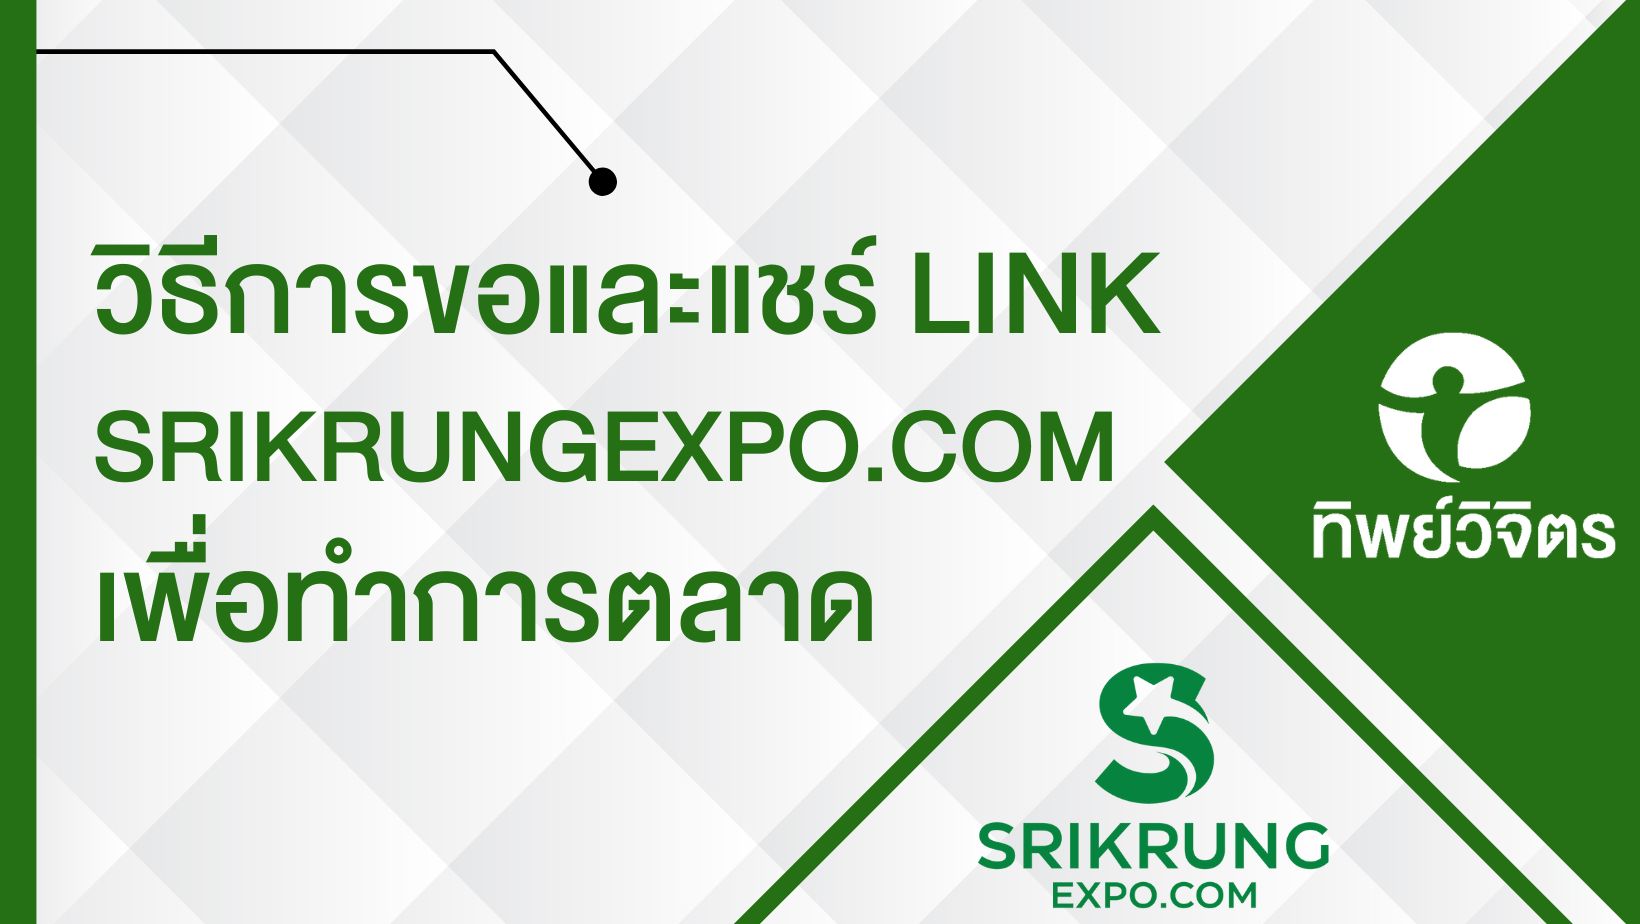 วิธีการขอและแชร์ Link SrikrungExpo.com เพื่อทำการตลาด